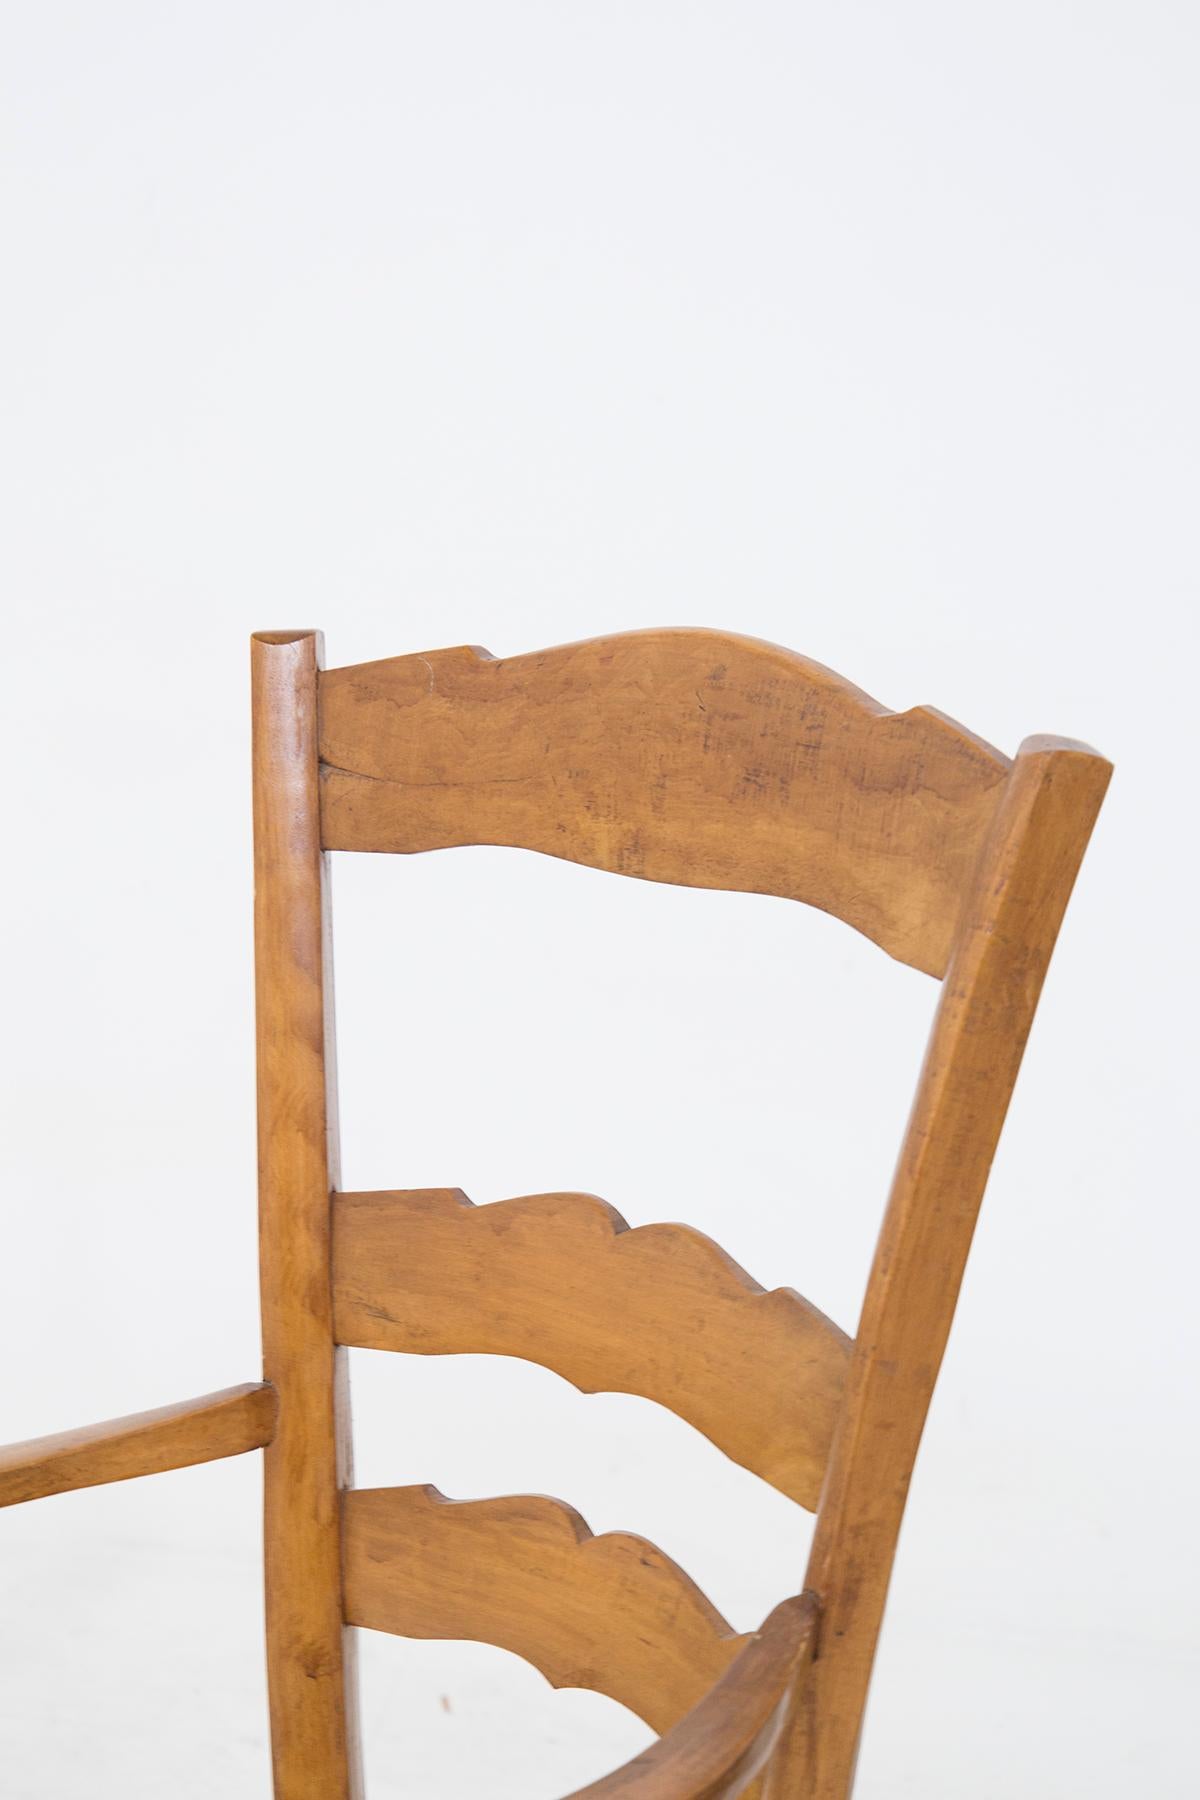 Belle paire de chaises à bras attribuée au grand designer Paolo Buffa dans les années 1940.
Le cadre est entièrement réalisé en bois léger, solide et durable. Il y a 4 pieds qui soutiennent des formes sinueuses et carrées ; à l'avant et à l'arrière